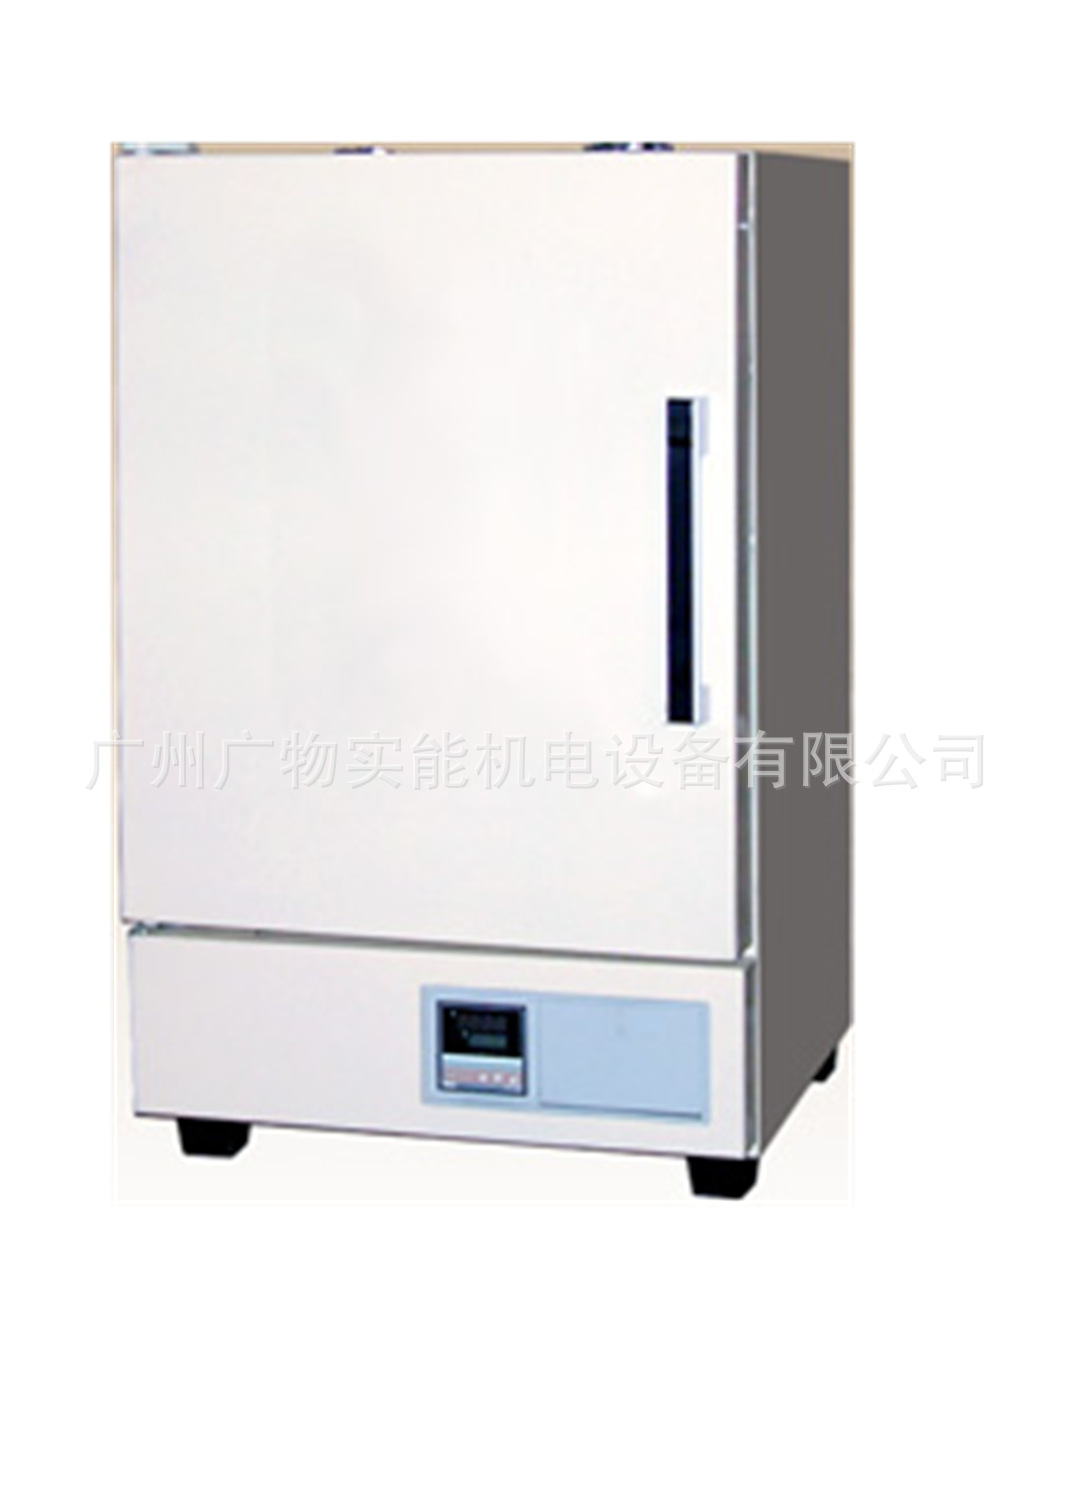 上海实验仪器厂PH030电热恒温干燥箱 用于烘焙、干燥、消毒、培养